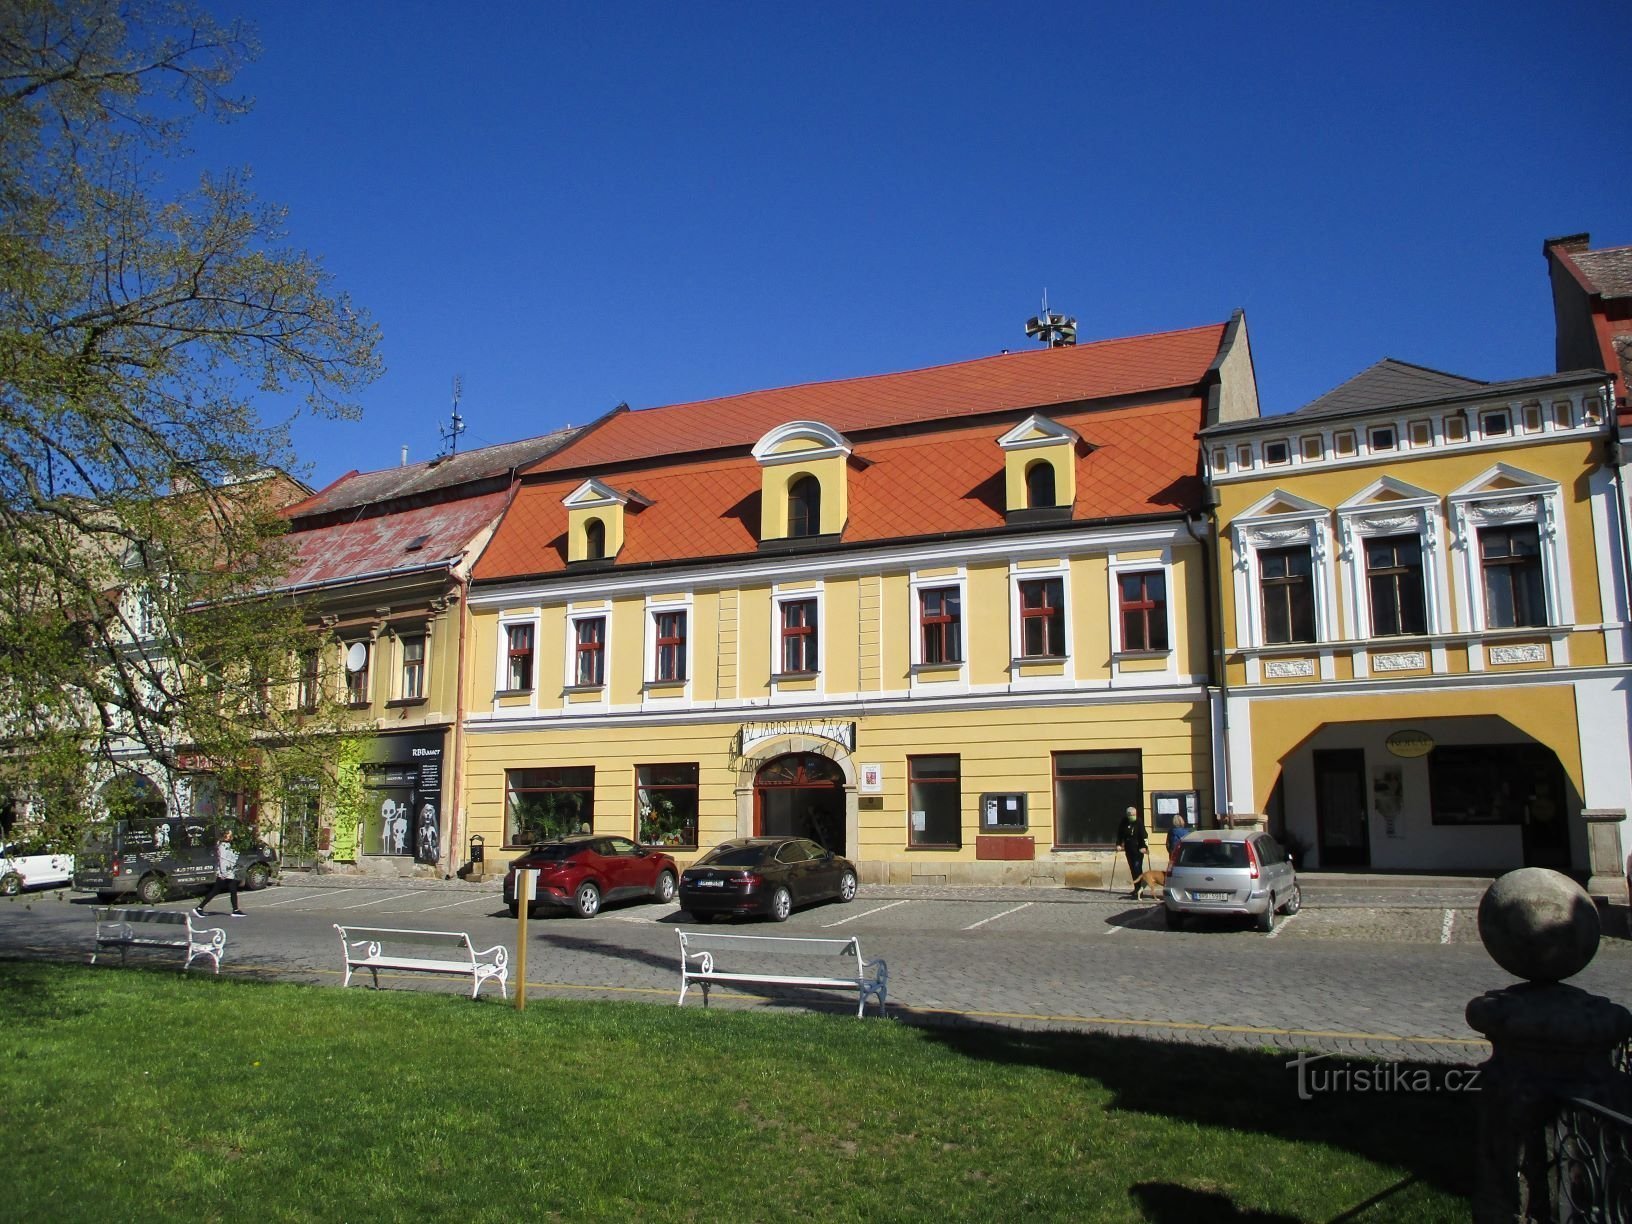 Piazza dell'esercito cecoslovacco n. 49 (Jaroměř, 22.4.2020 maggio XNUMX)